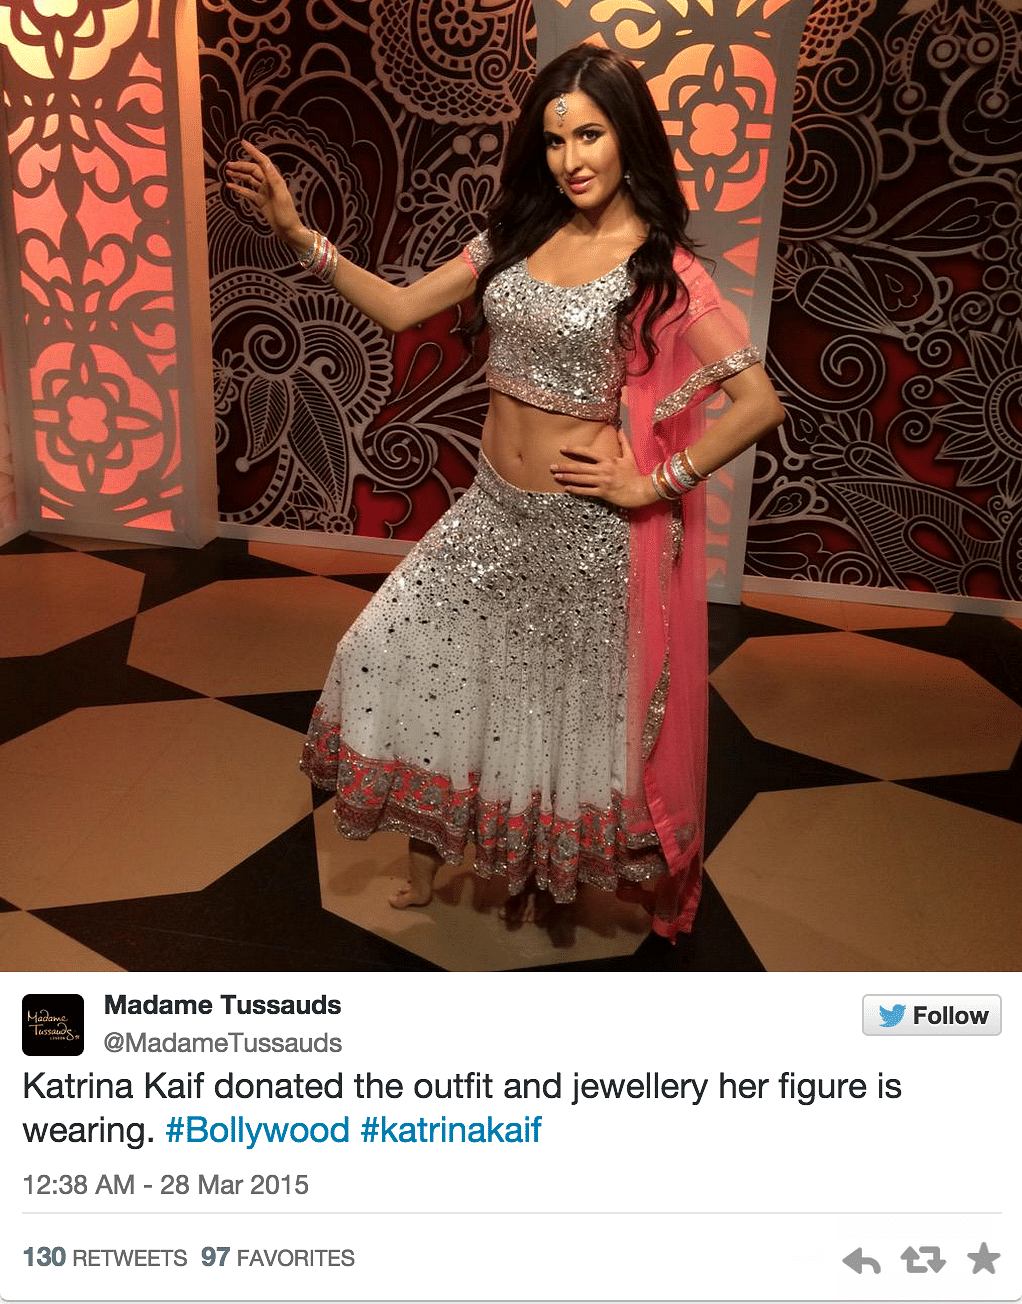 Katrina Kaif joins other Bollywood stars at Madame Tussauds, London. Take a look at Katrina’s wax version.